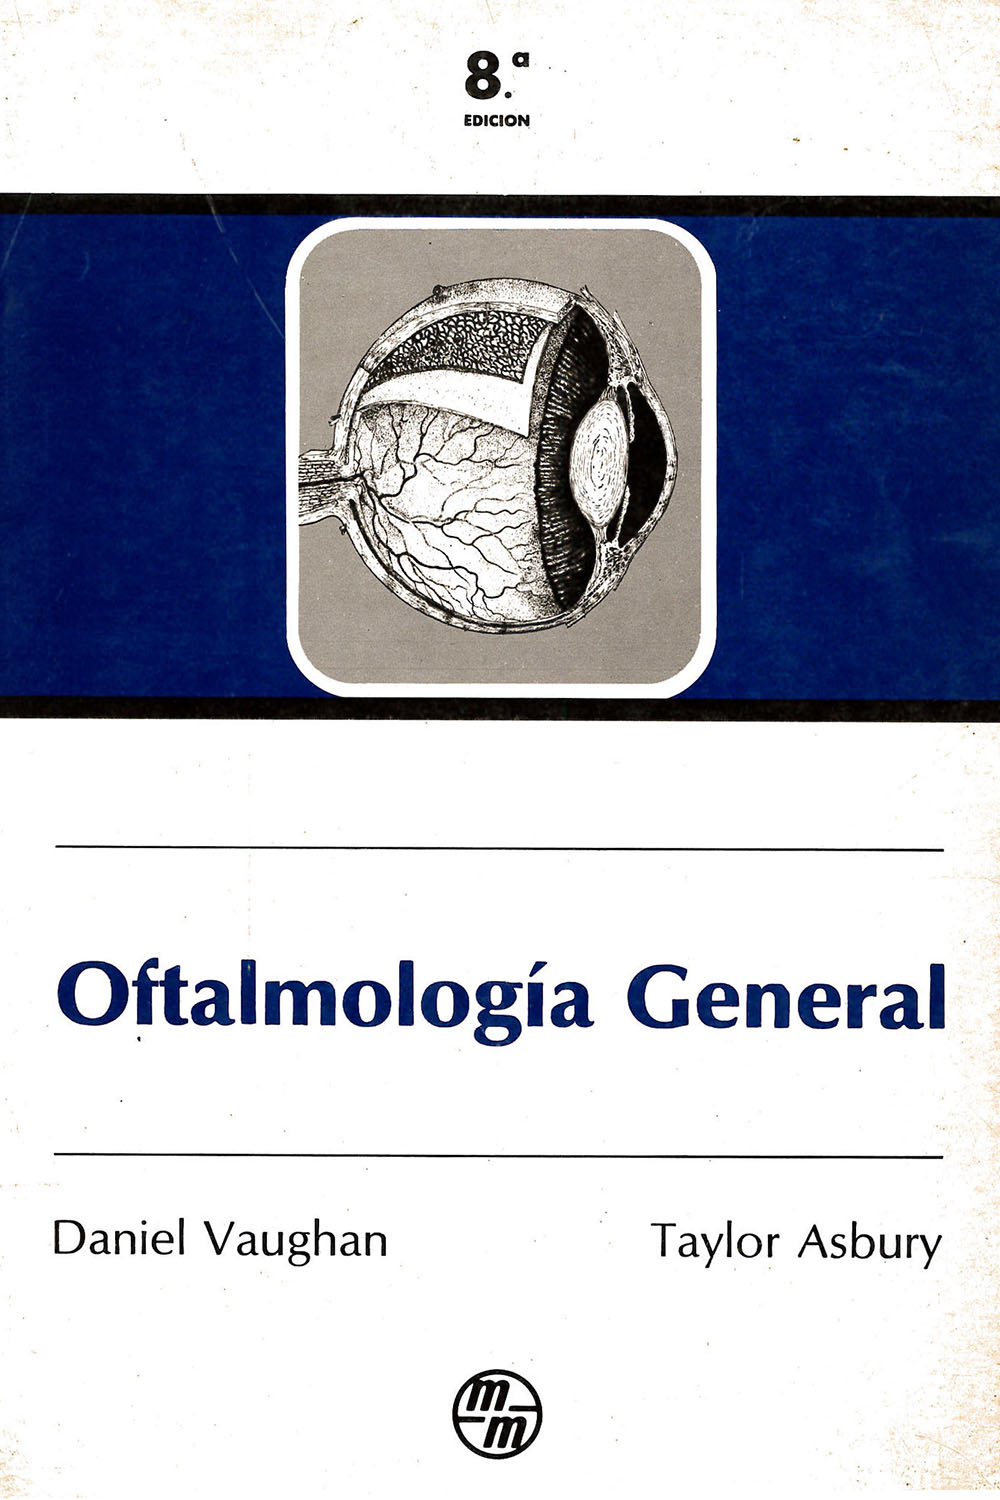 15 / 26 - RE46 V38 1987 Oftalmología General, Daniel Vaughan y Taylor Asbury - Manual Moderno, México 1987